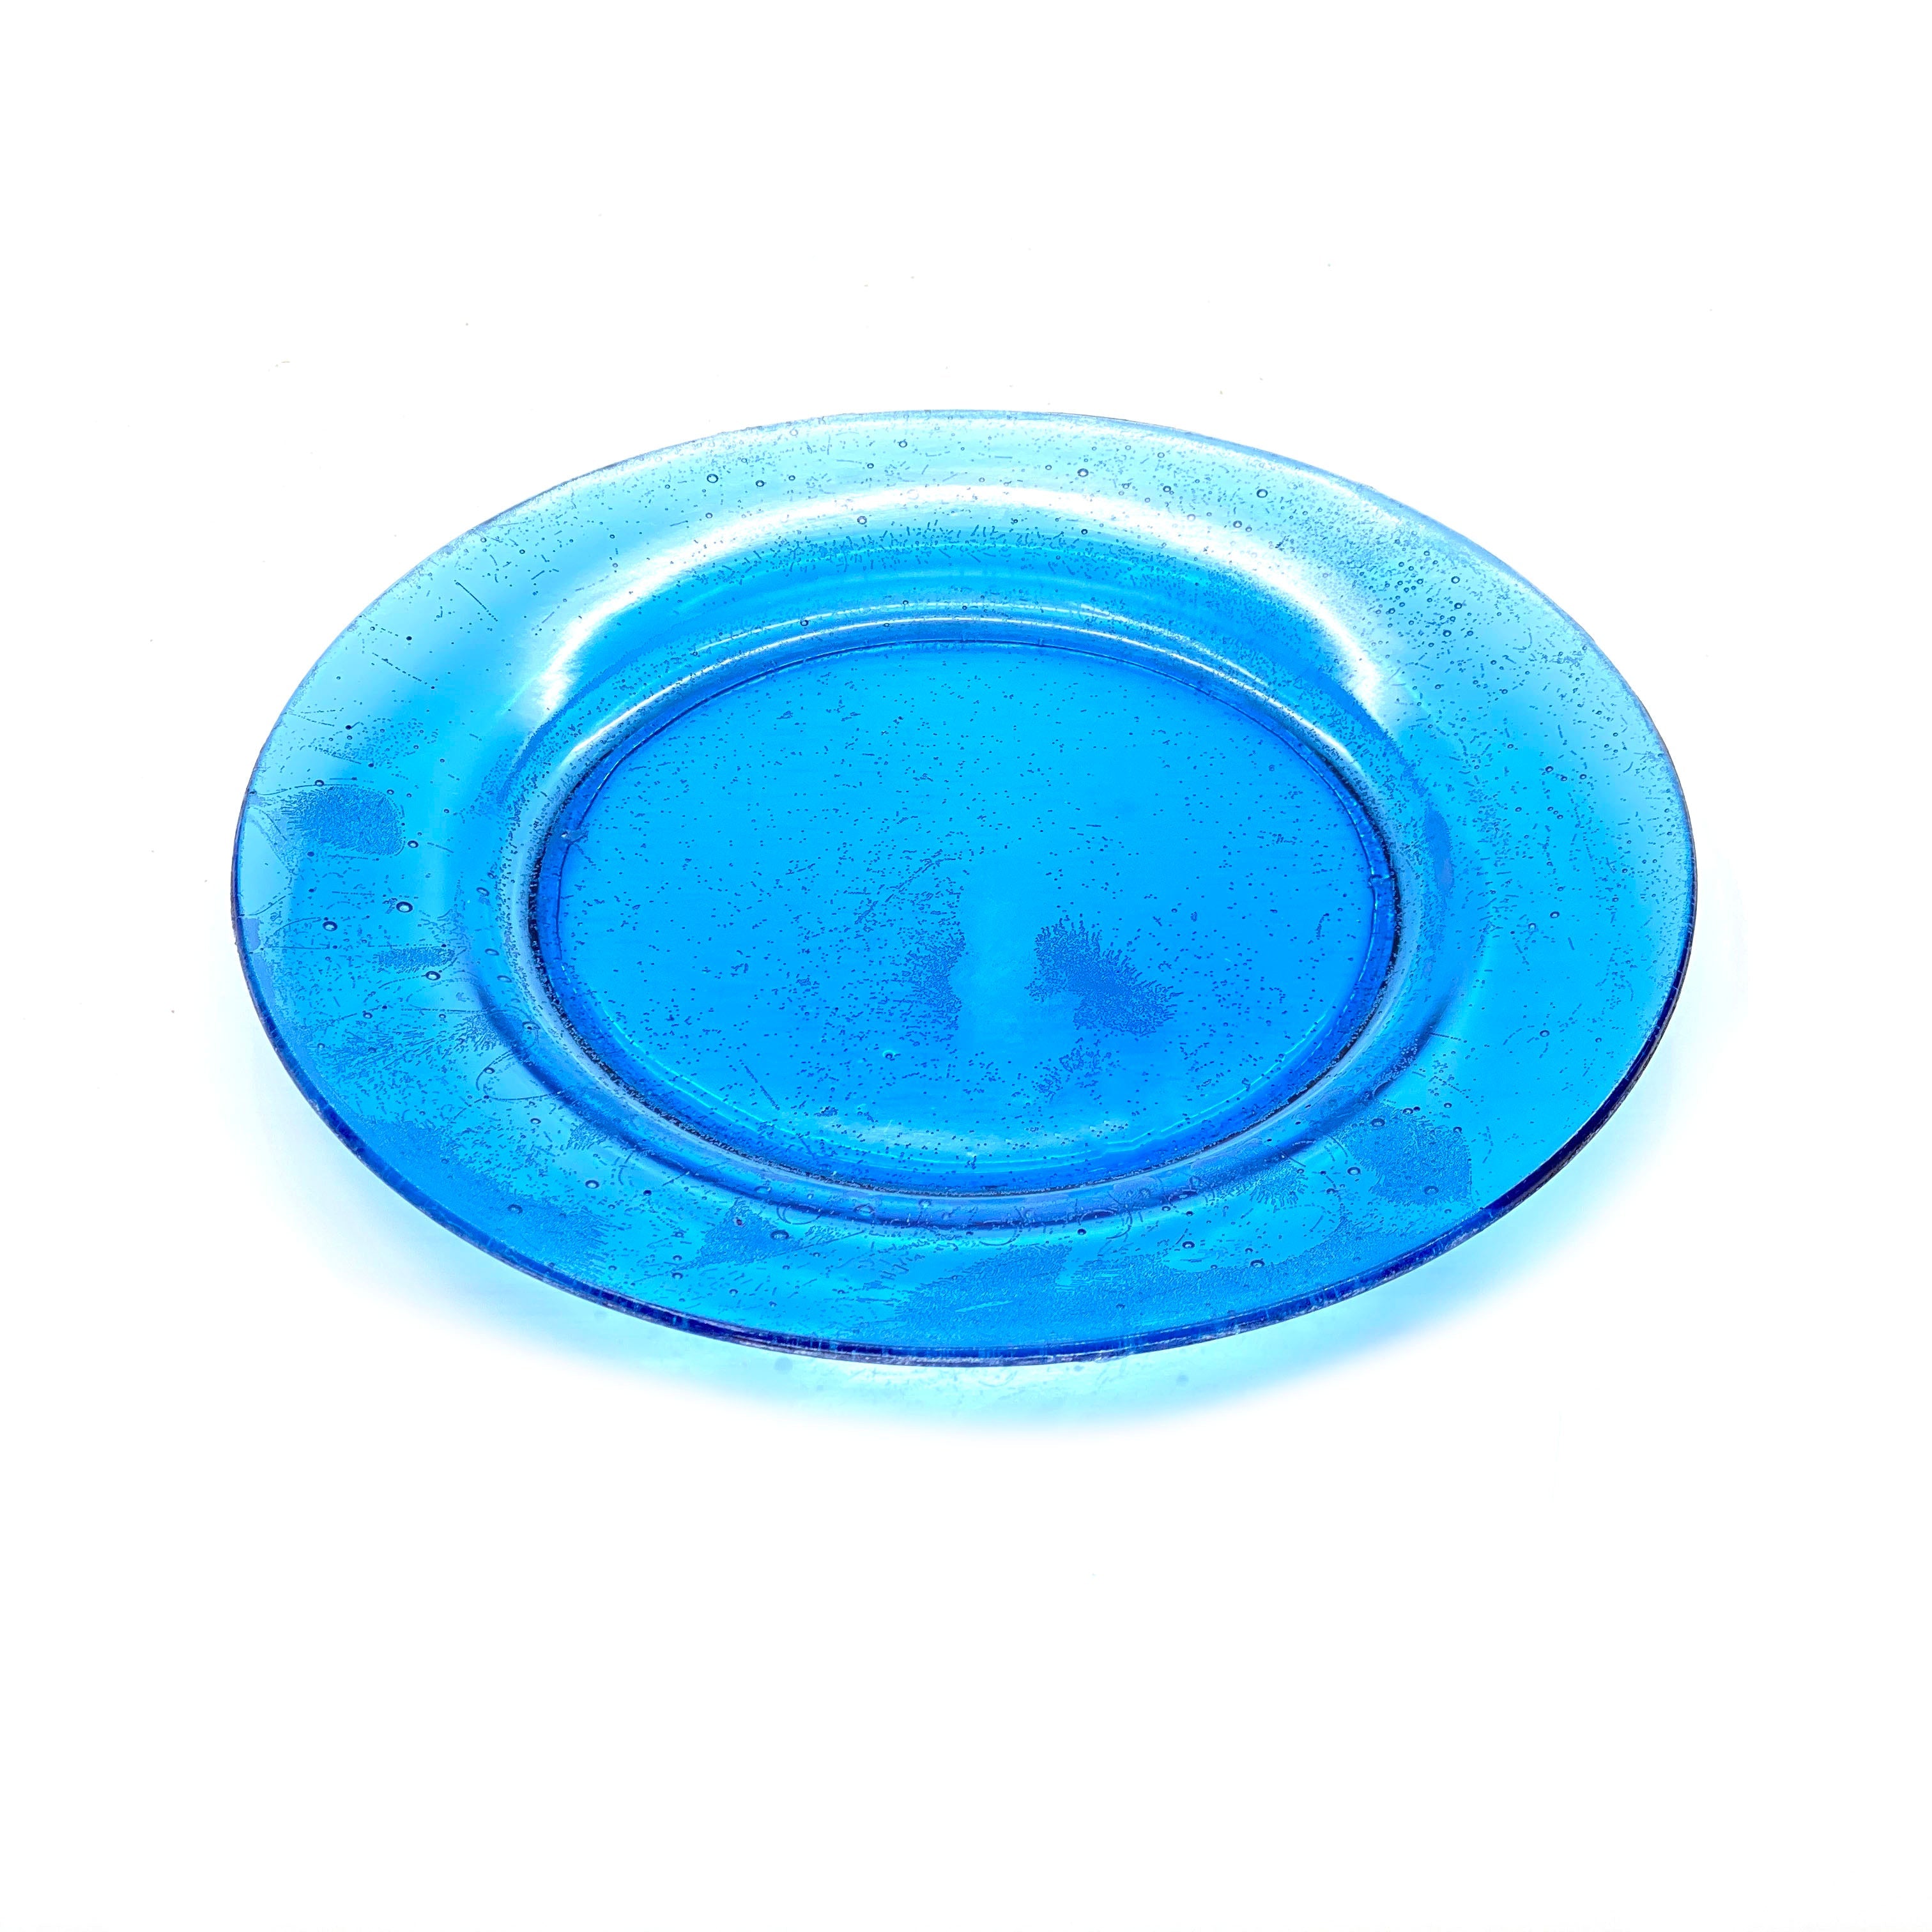 SMASHProps Breakaway Large Dinner Plate - LIGHT BLUE translucent - Light Blue,Translucent